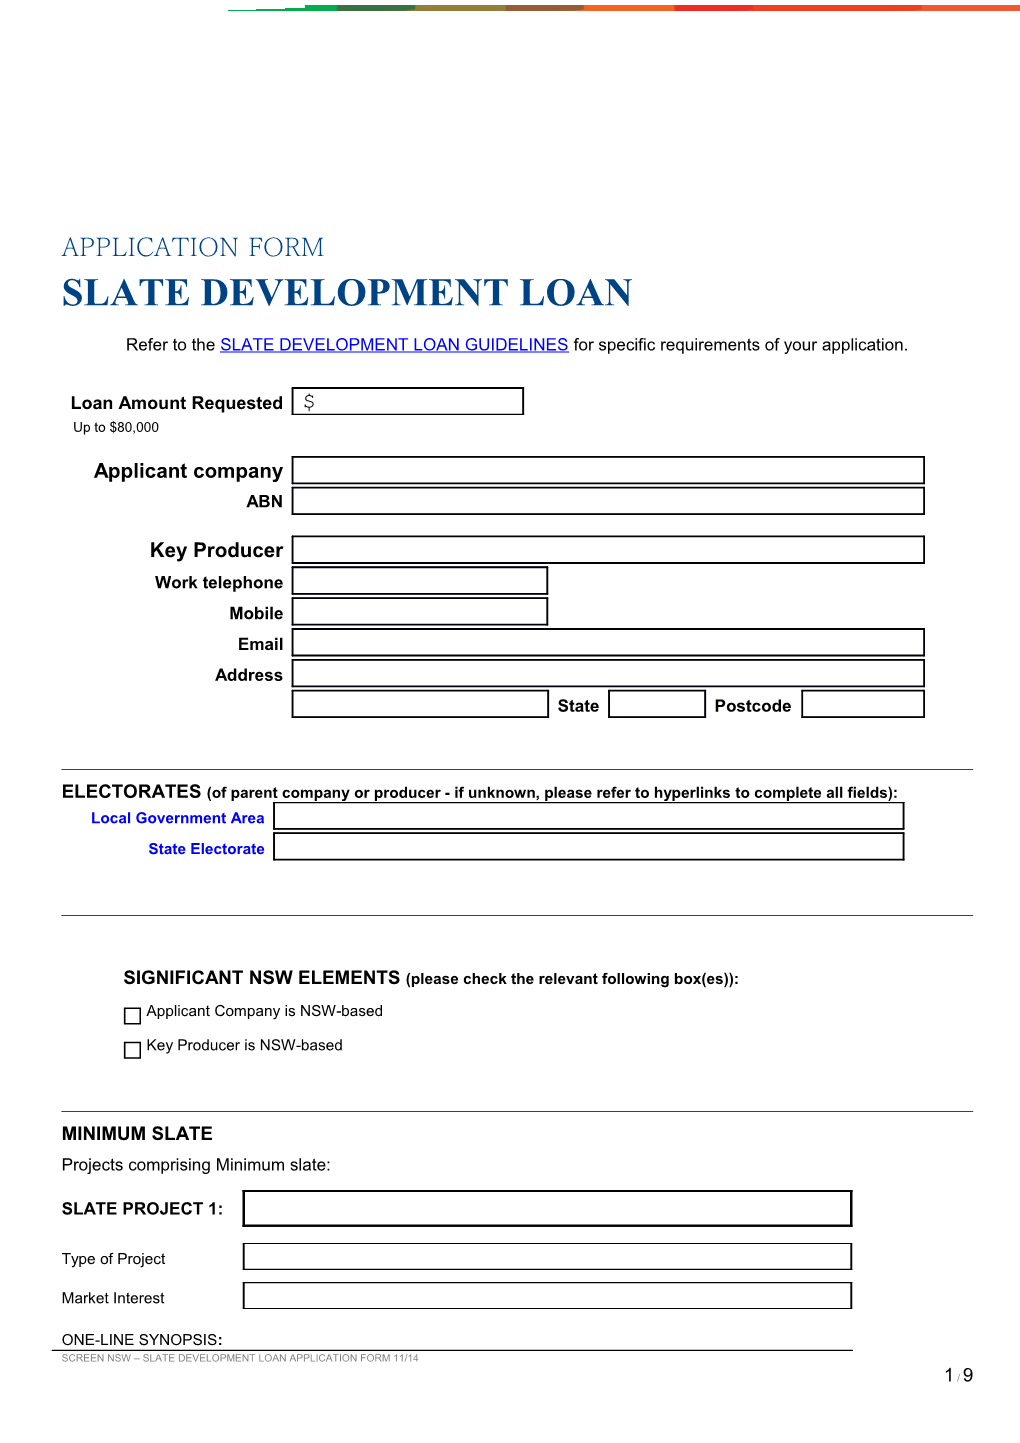 Screen Nsw Slate Development Loan Application Form 11/14